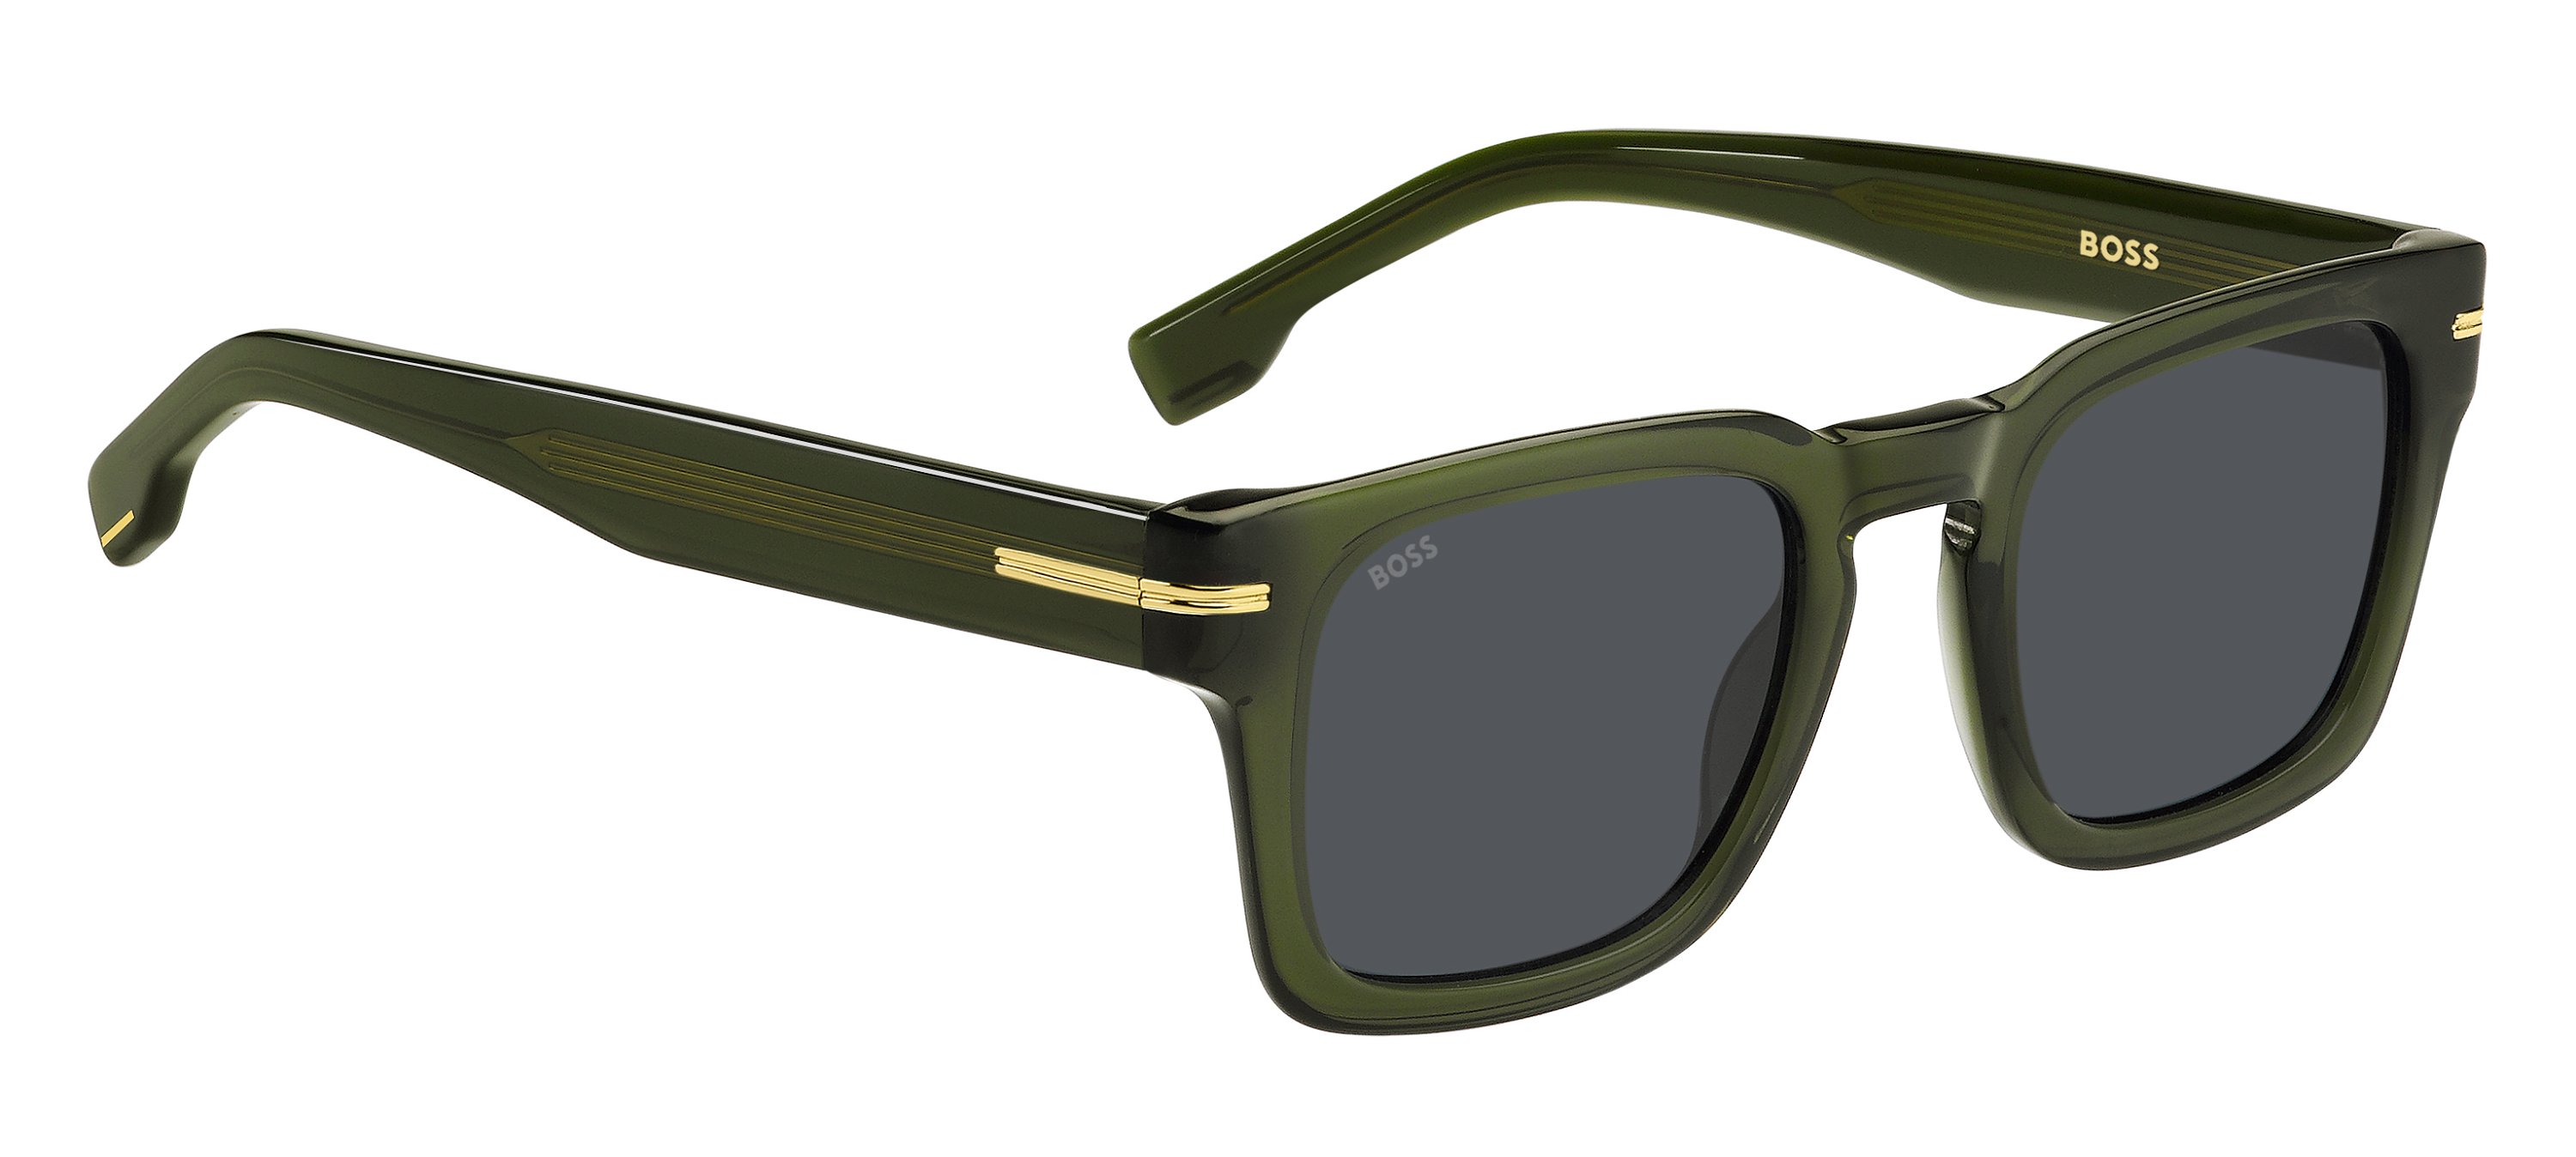 Das Bild zeigt die Sonnenbrille BOSS1625S 1ED von der Marke BOSS in Grün.